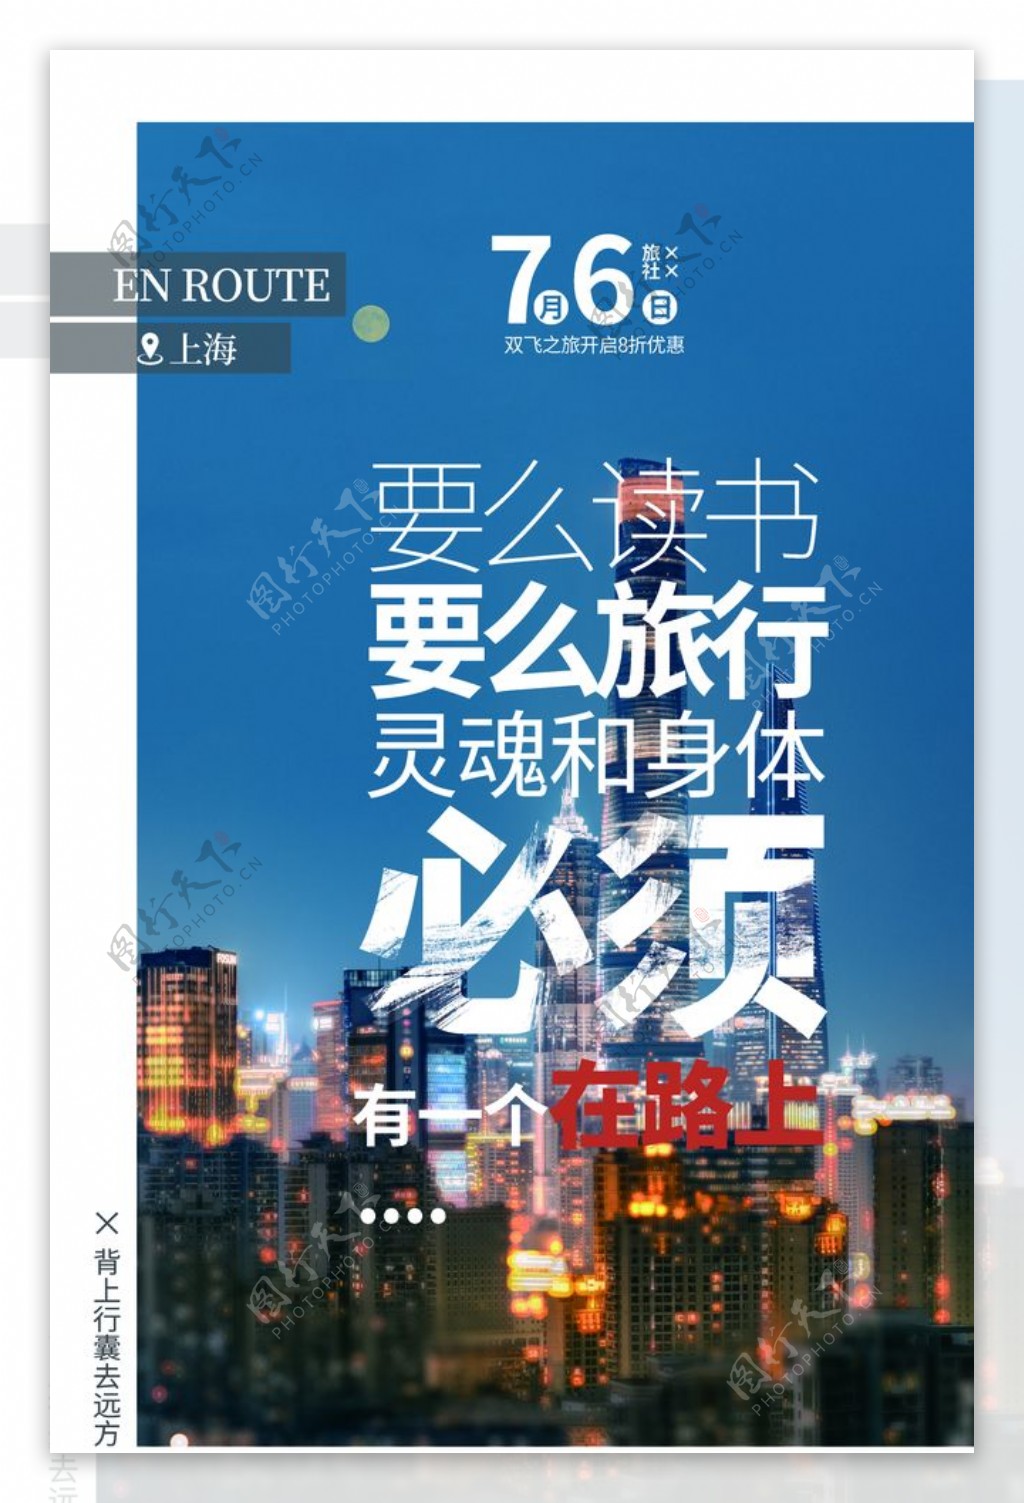 上海旅游旅行活动海报素材图片